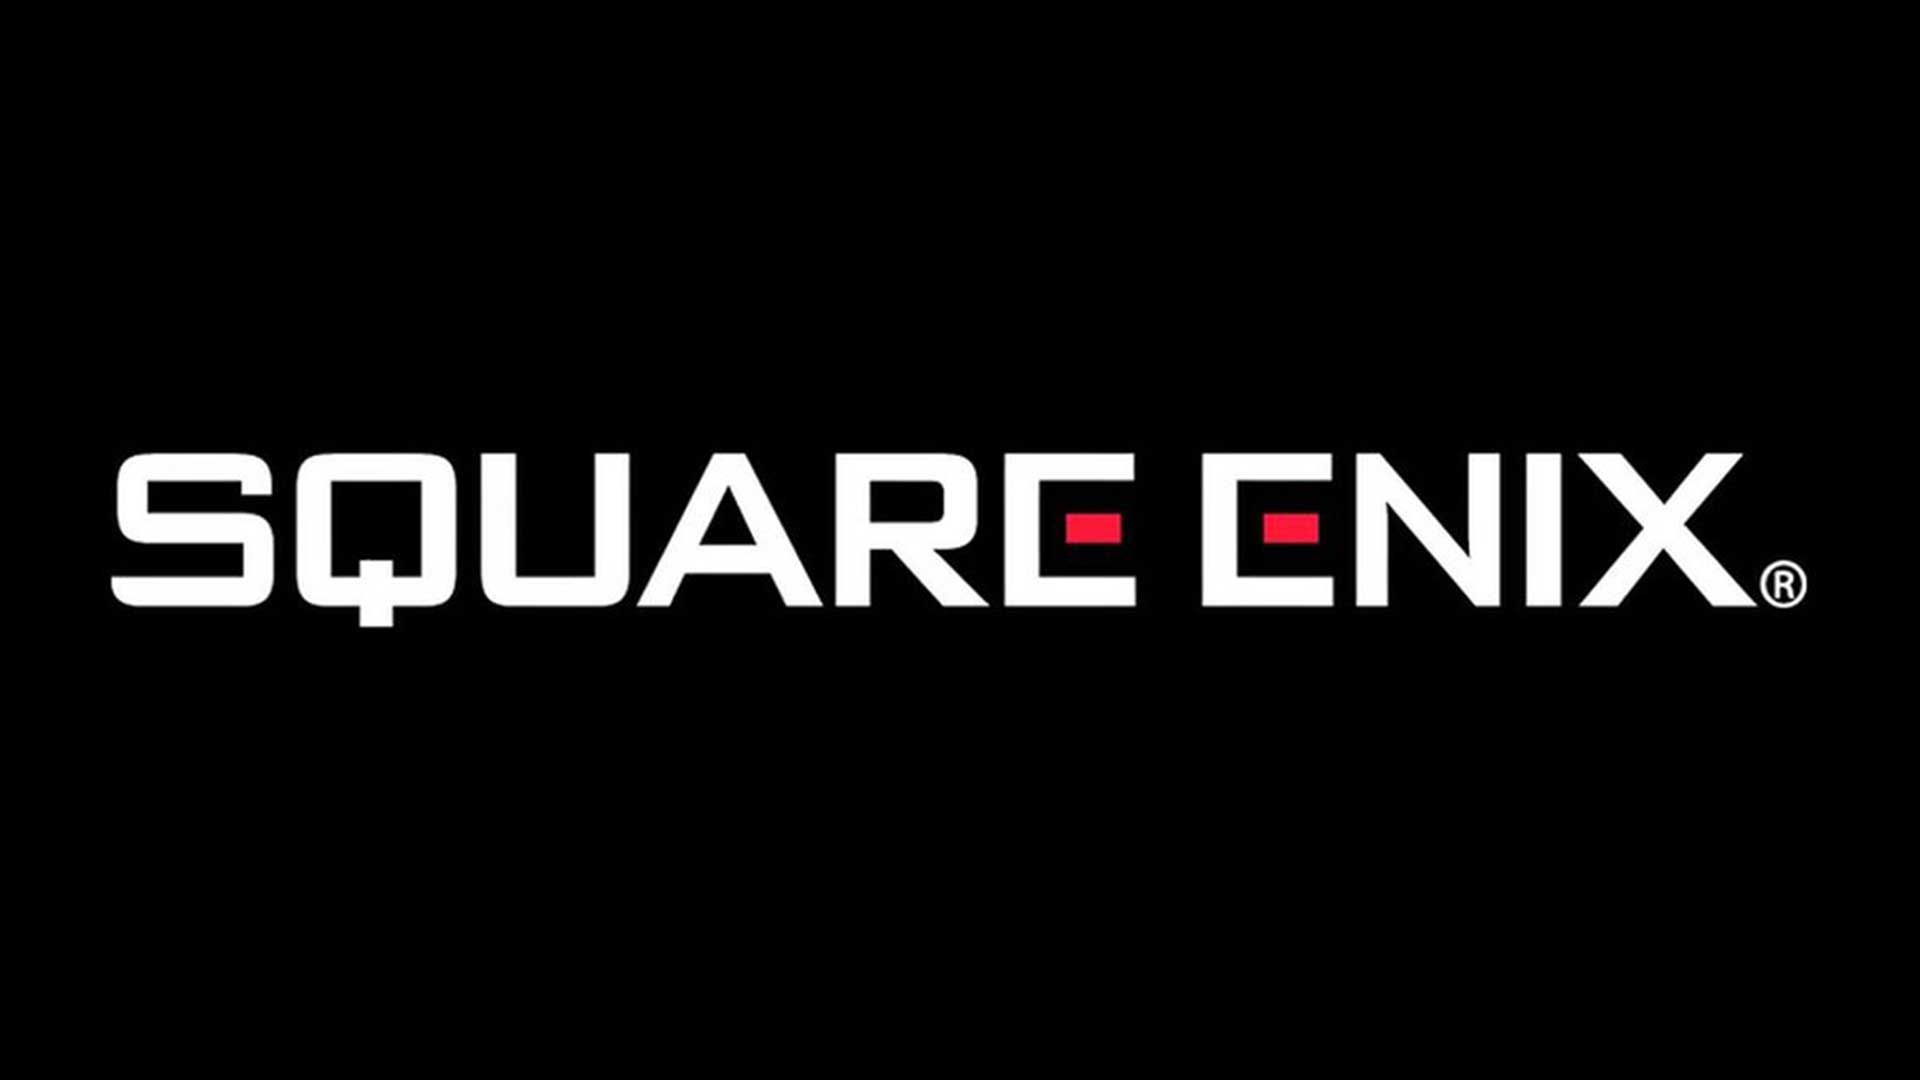 شرکت Square Enix به عرضه بازی روی کنسول های نسل هشتمی ادامه می دهد